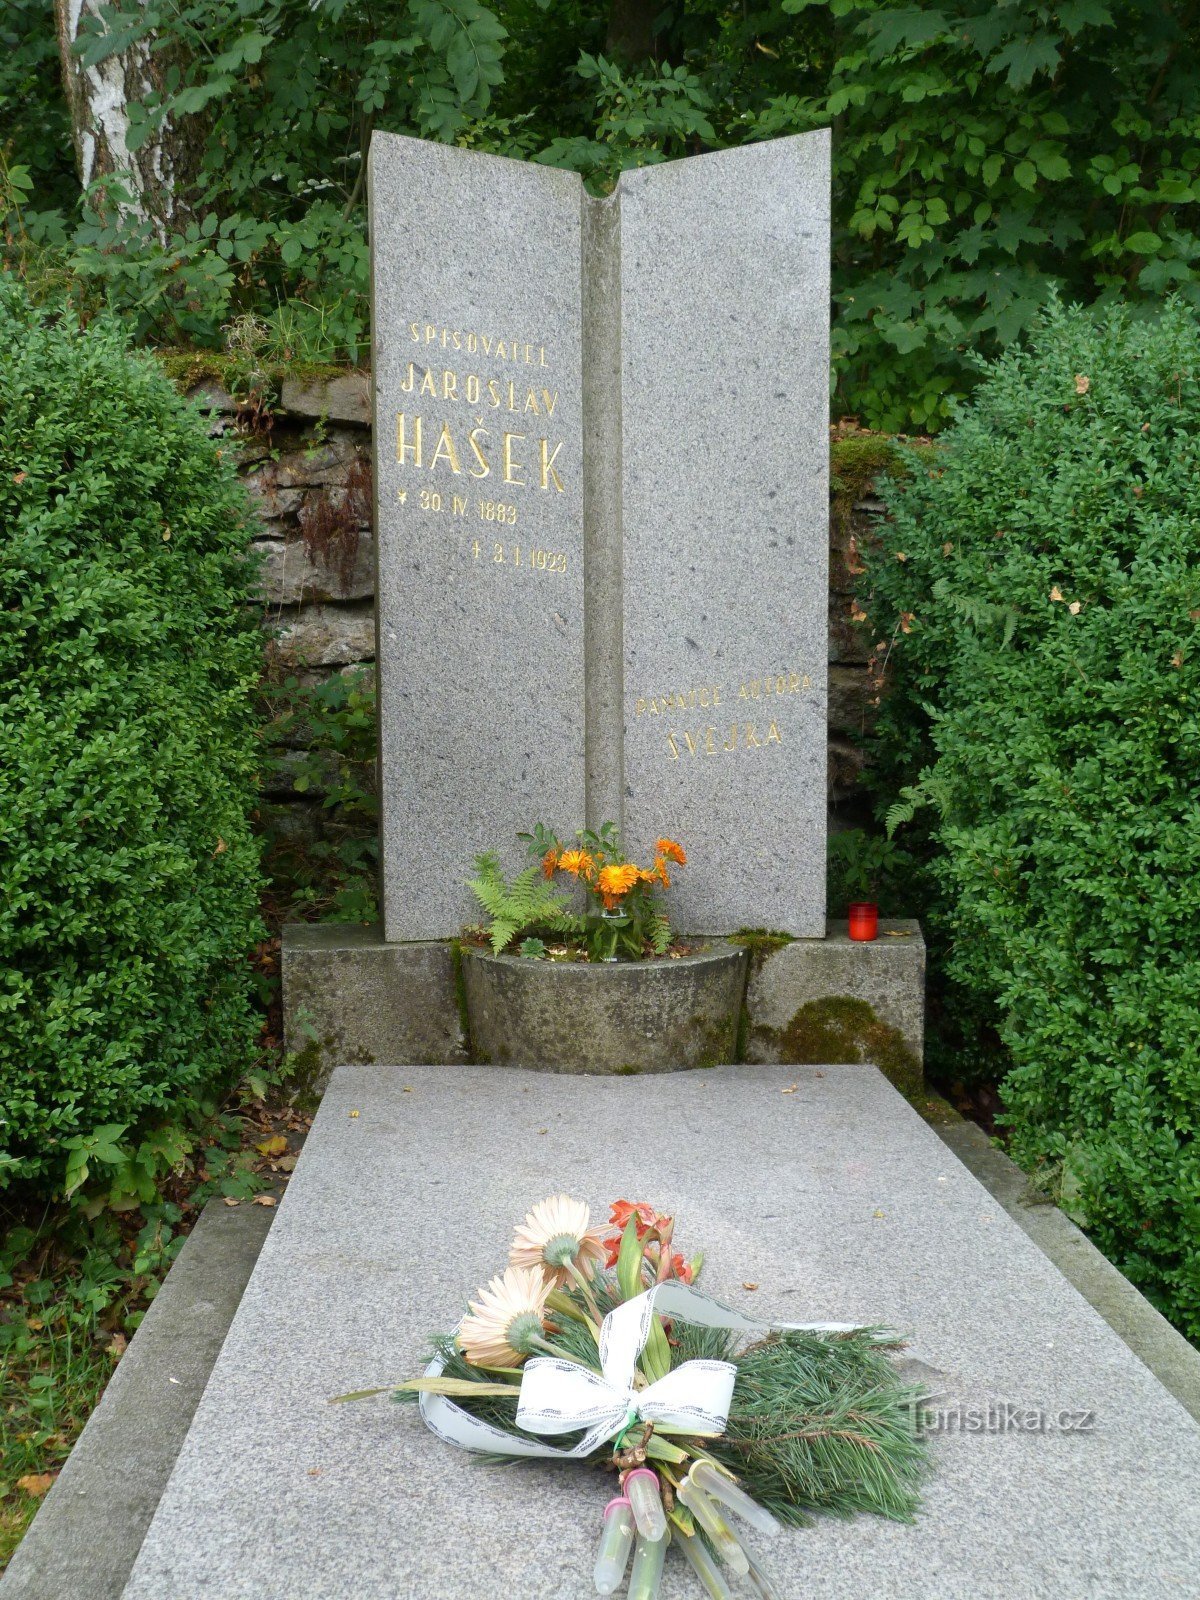 House and memorial of Jaroslav Hašek